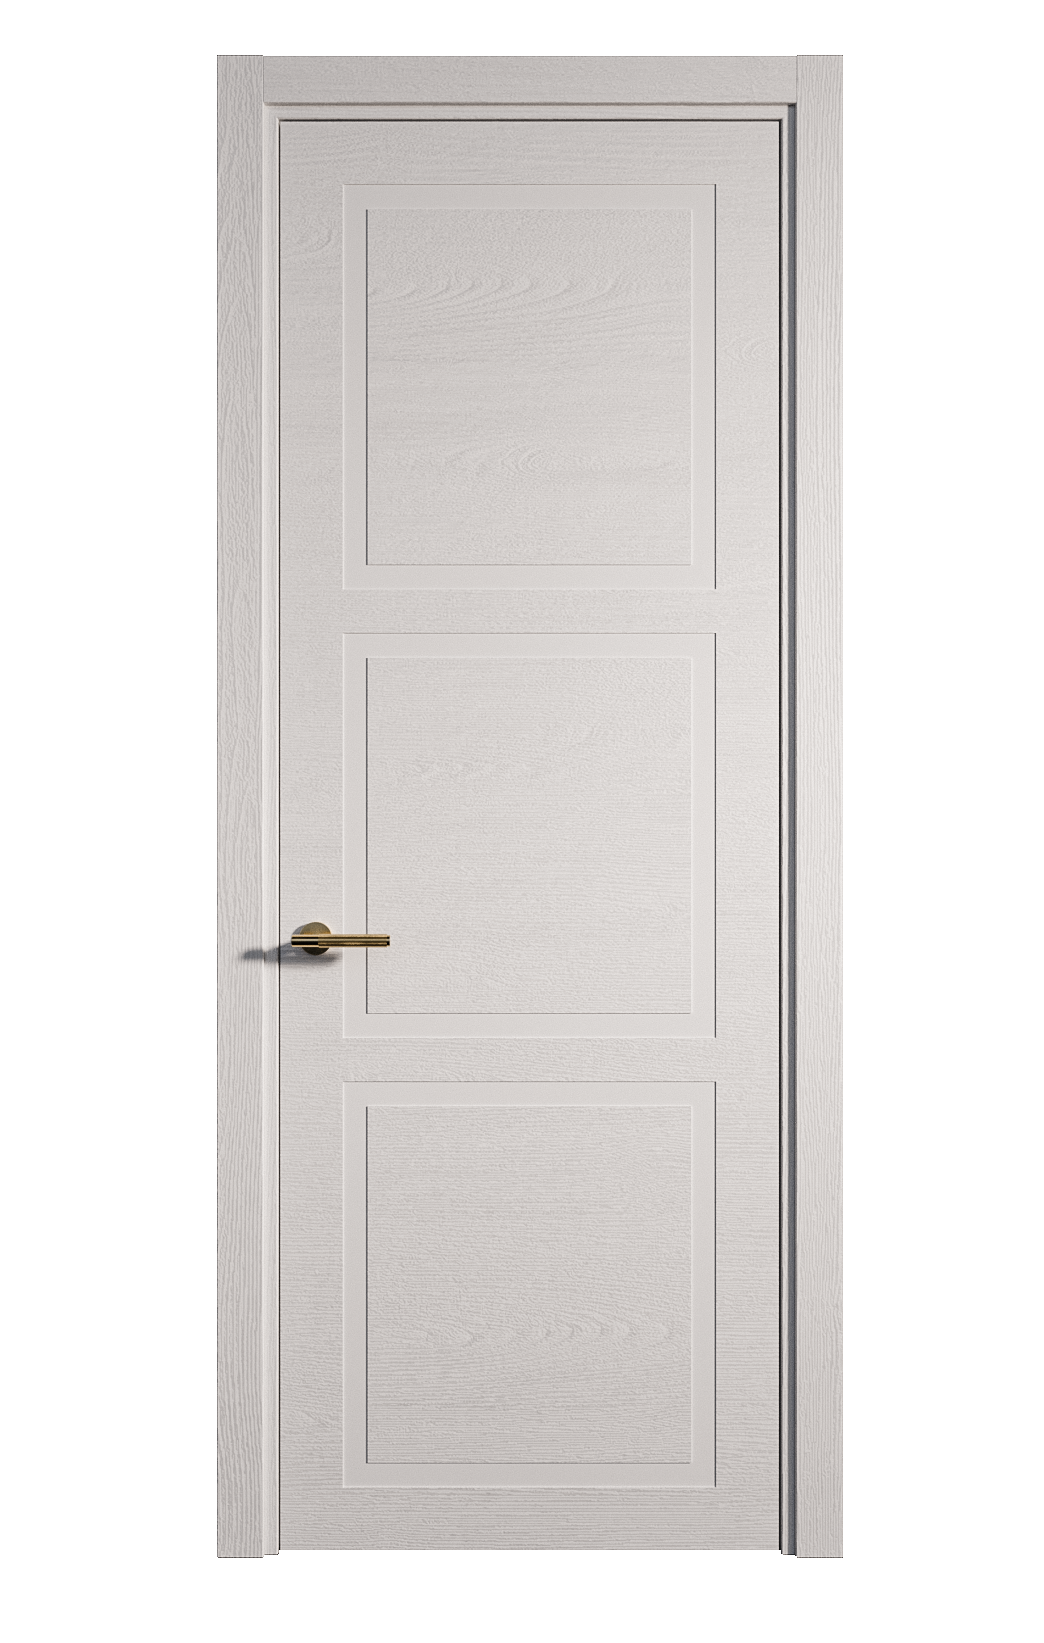 Межкомнатная дверь Бостон-3 глухая эмаль ral 9003 24484